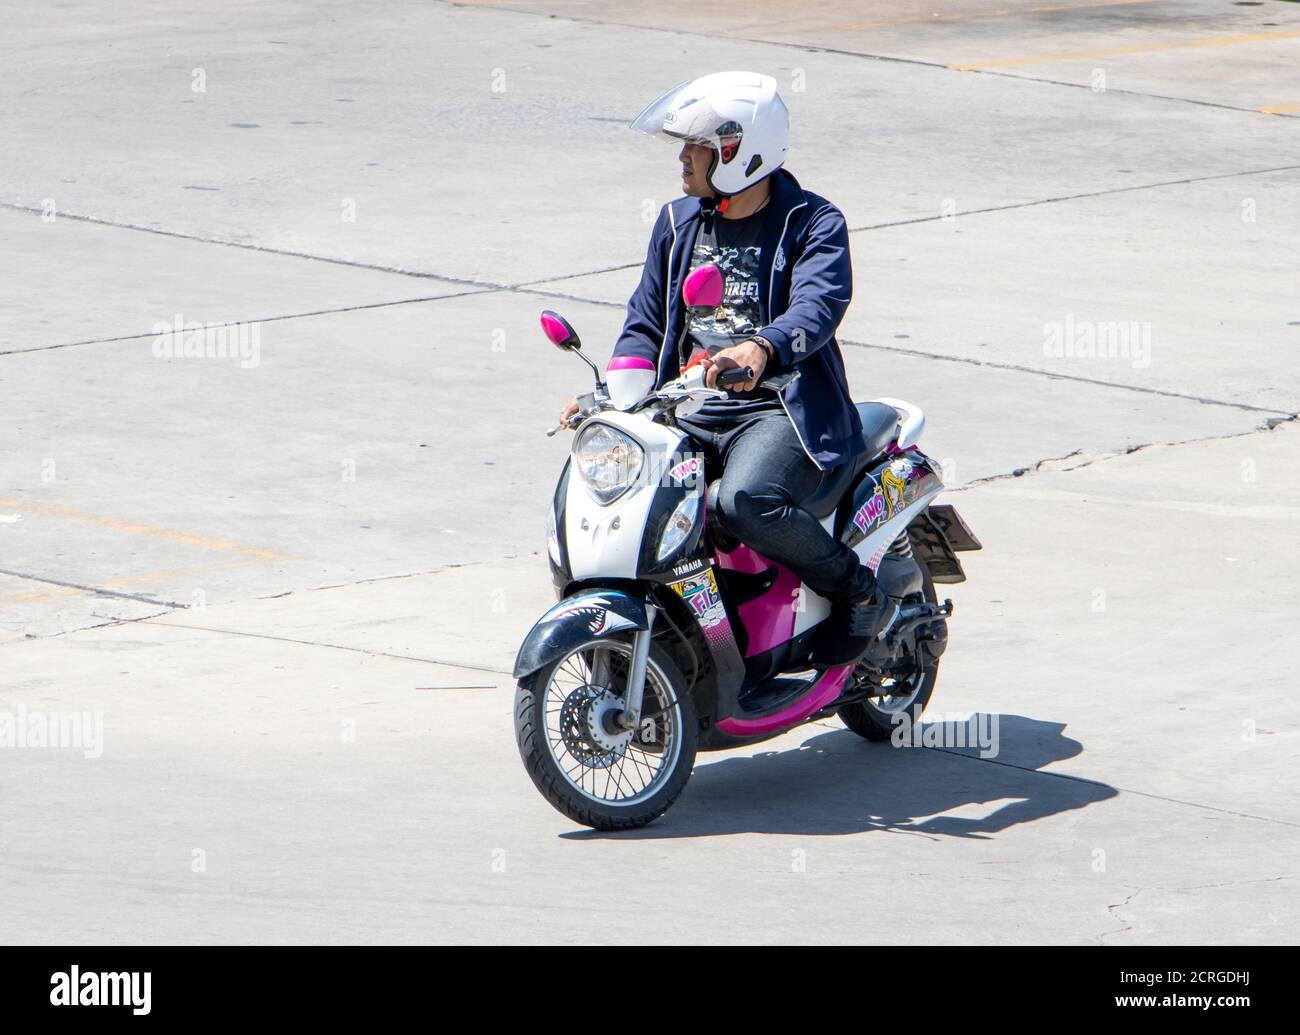 SAMUT PRAKAN, THAILAND, JULI 23 2020, EIN Mann fährt ein Motorrad. Ein asiatischer Mann fährt ein Moped. Stockfoto